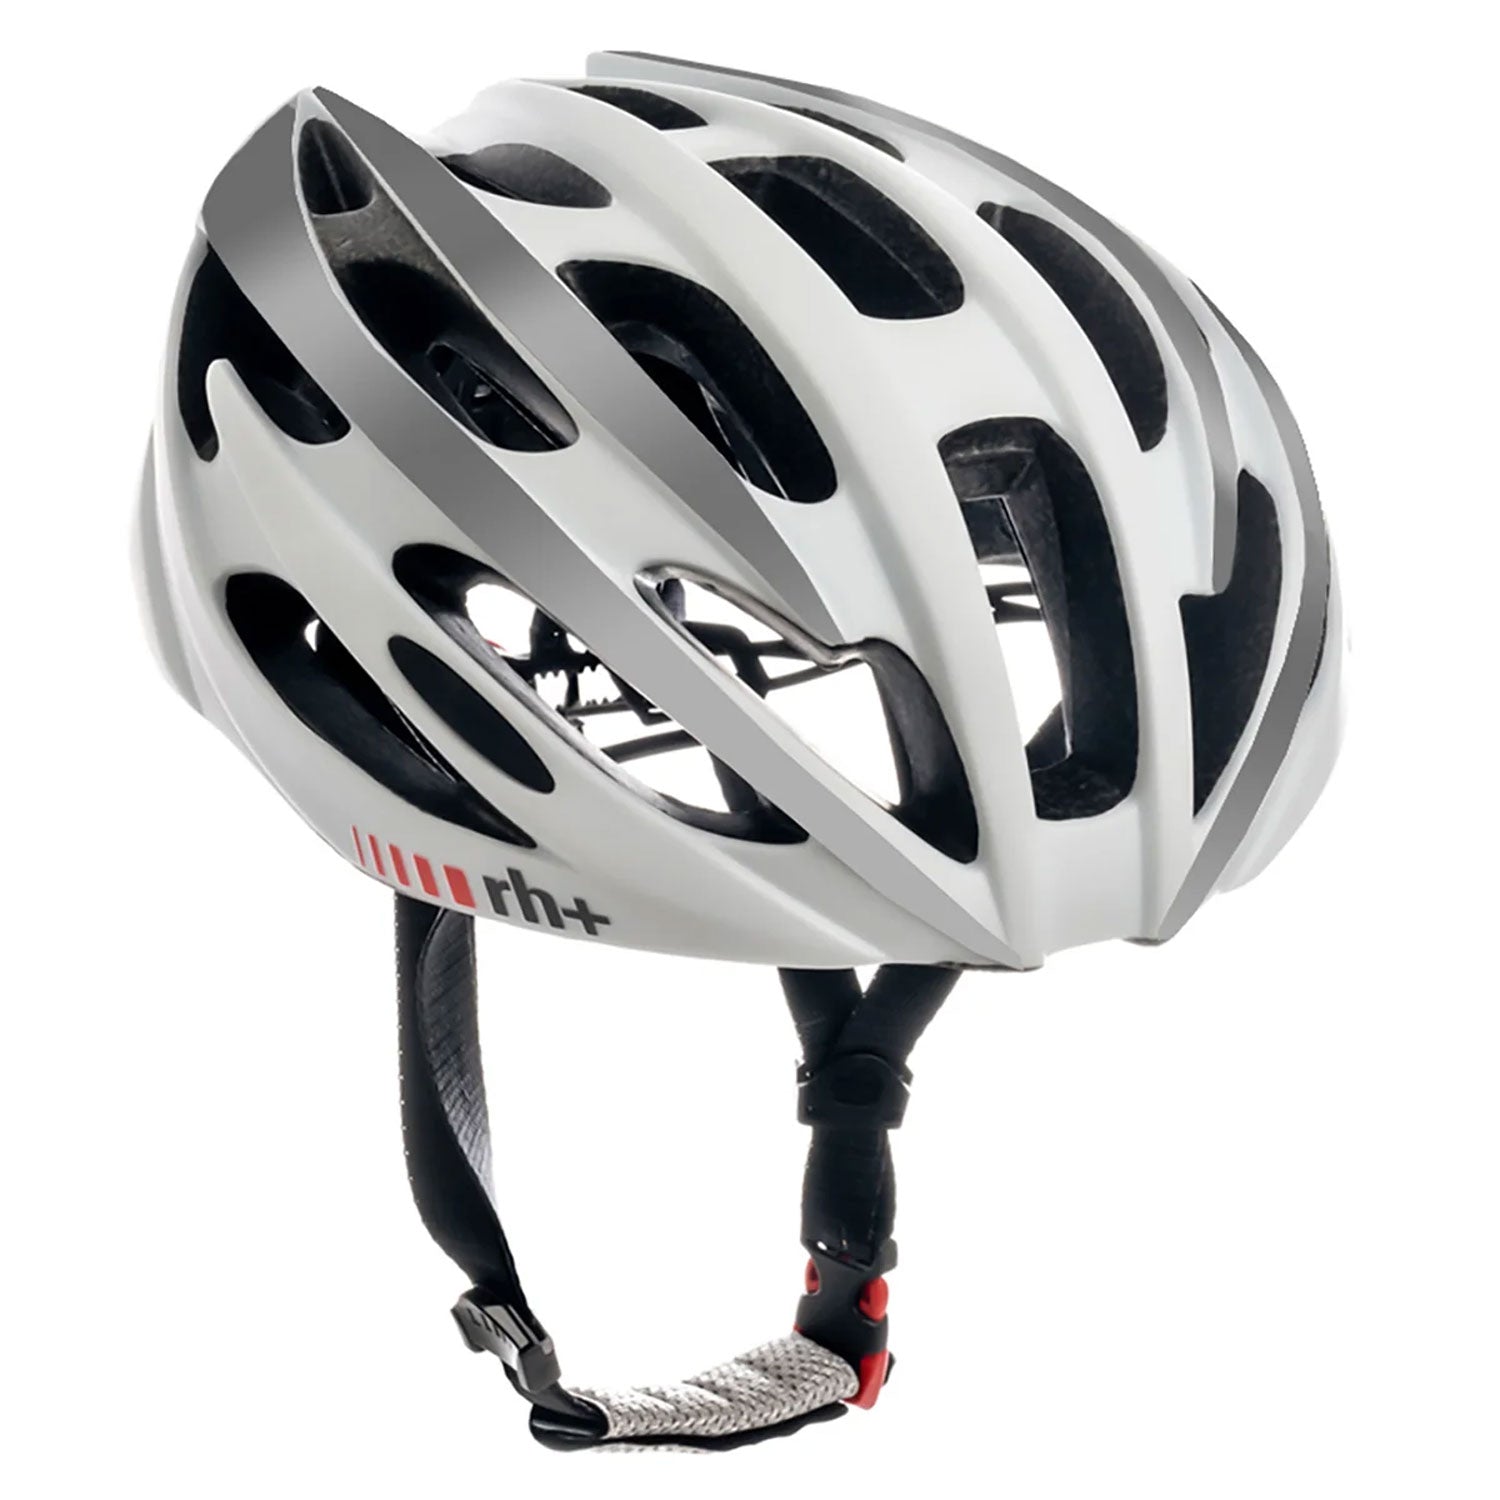 Rh+ Z Zero helmet - White